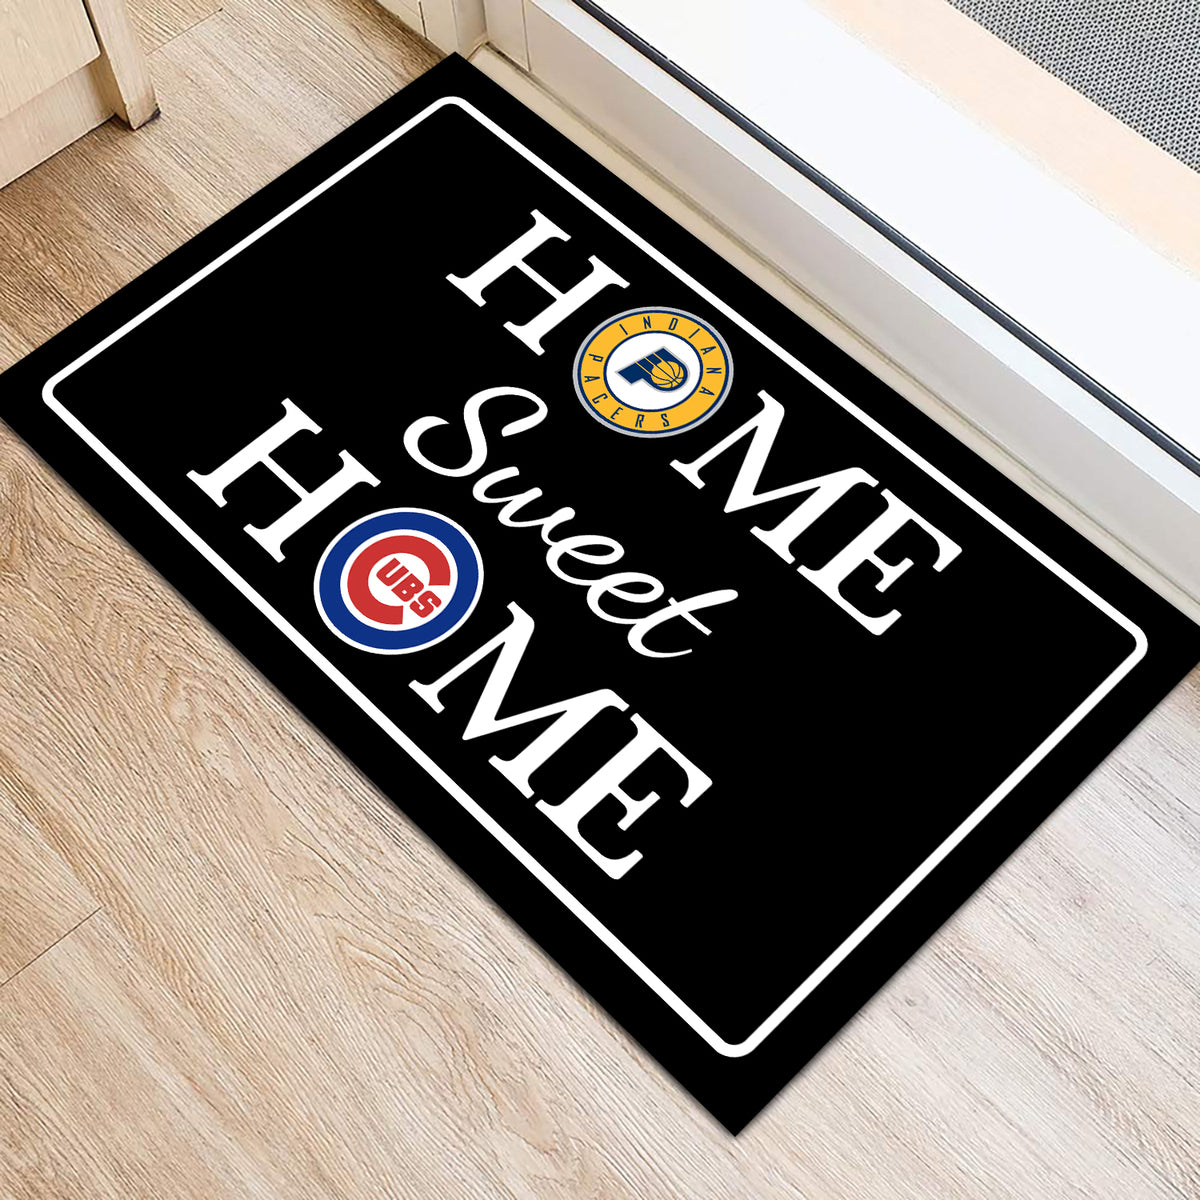 Home Sweet Home - Customized Doormat For Rachel Garner Young - Anti Slip Indoor Doormat